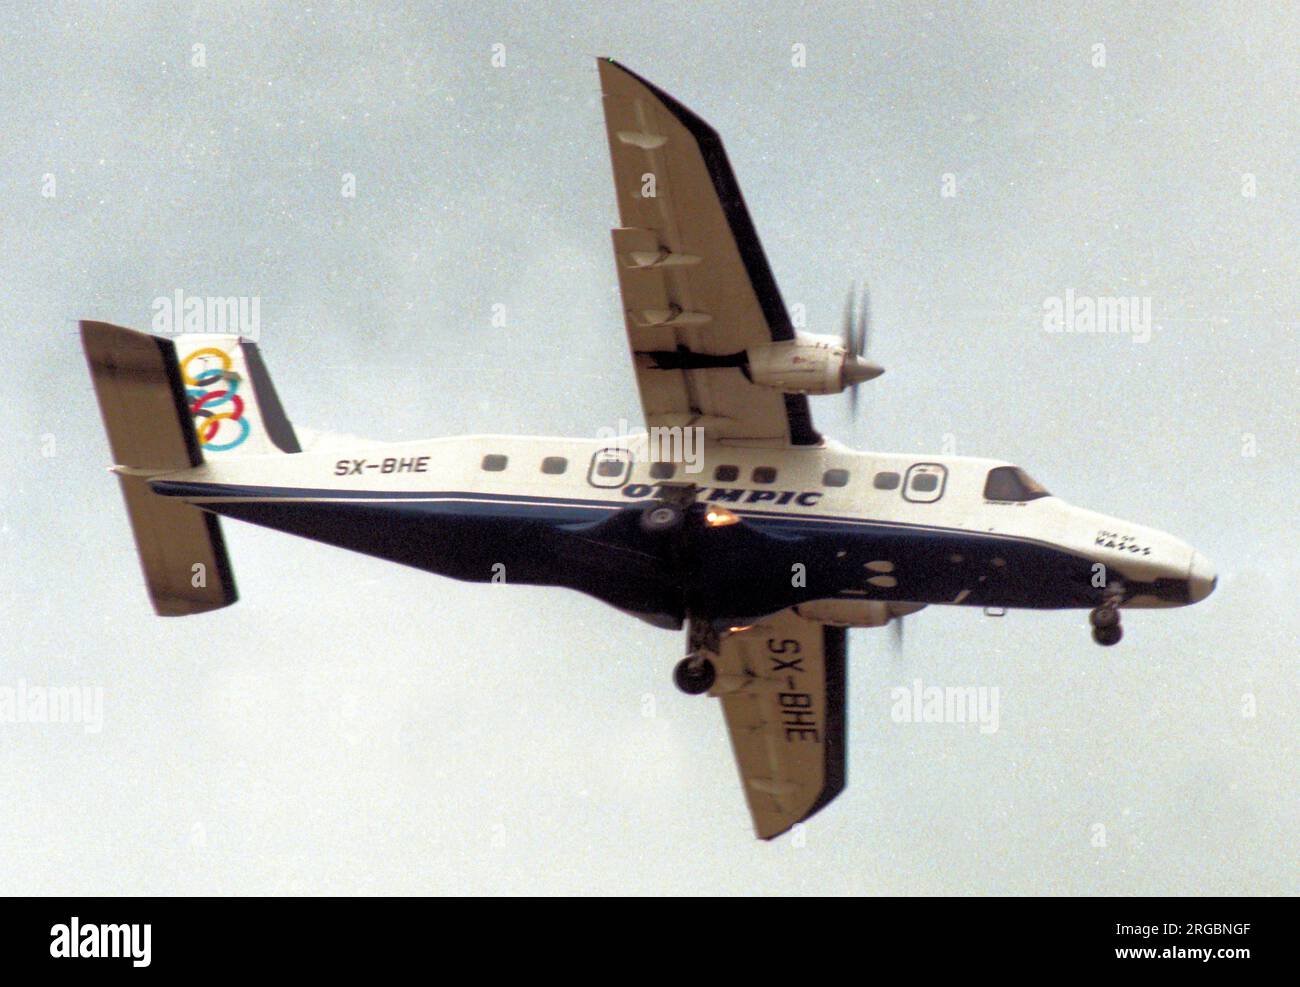 Dornier 228-201 SX-BHE (msn 8050) von Olympic Airlines auf dem Weg zum internationalen Flughafen Athen. Stockfoto